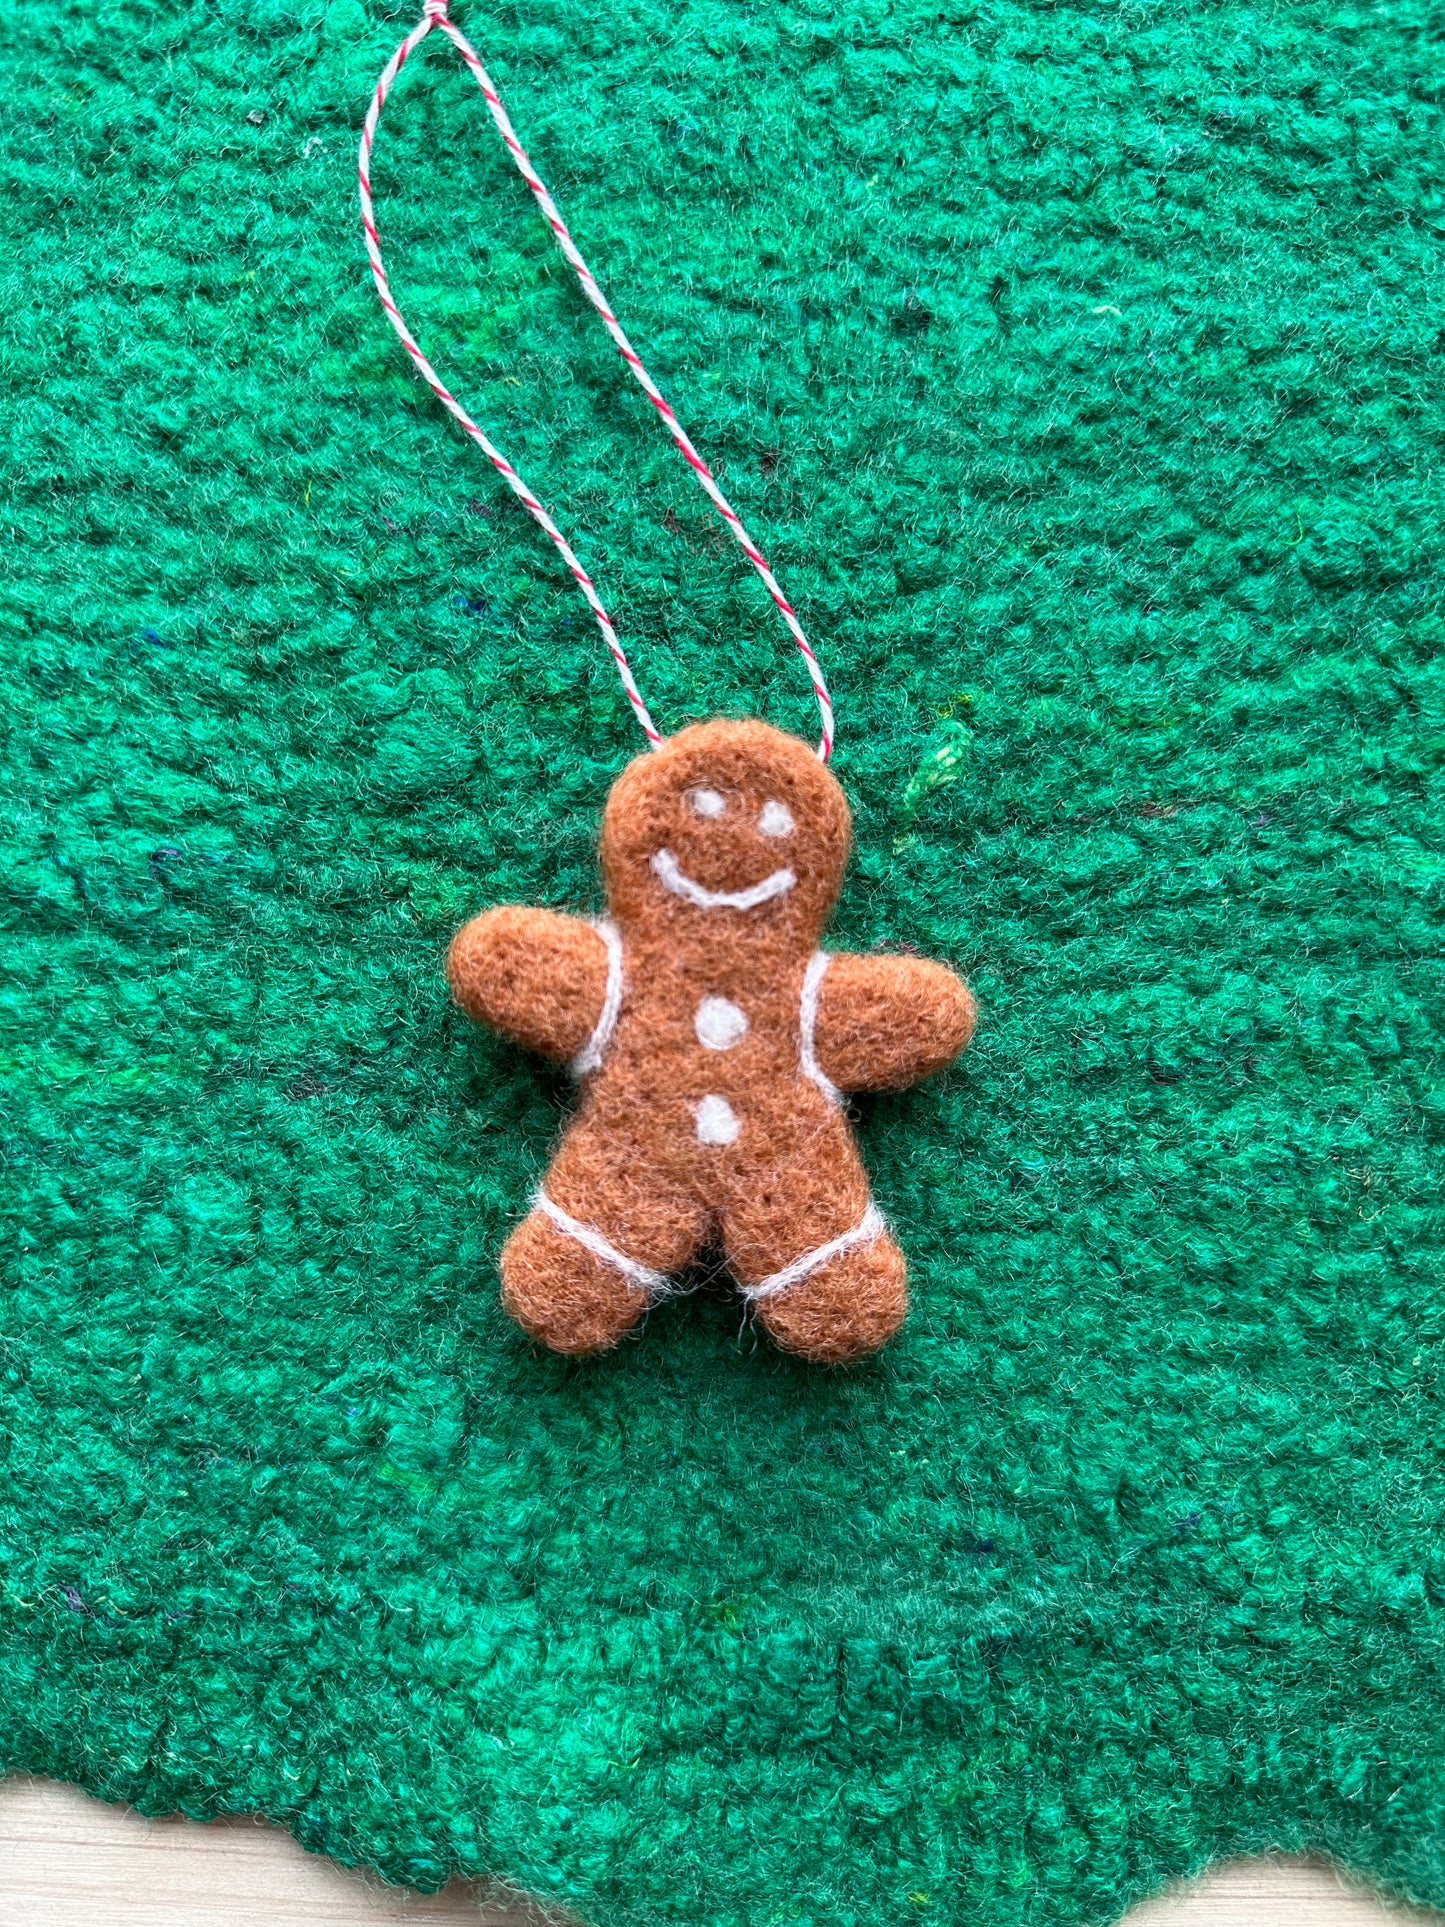 Gingerbread man ornament